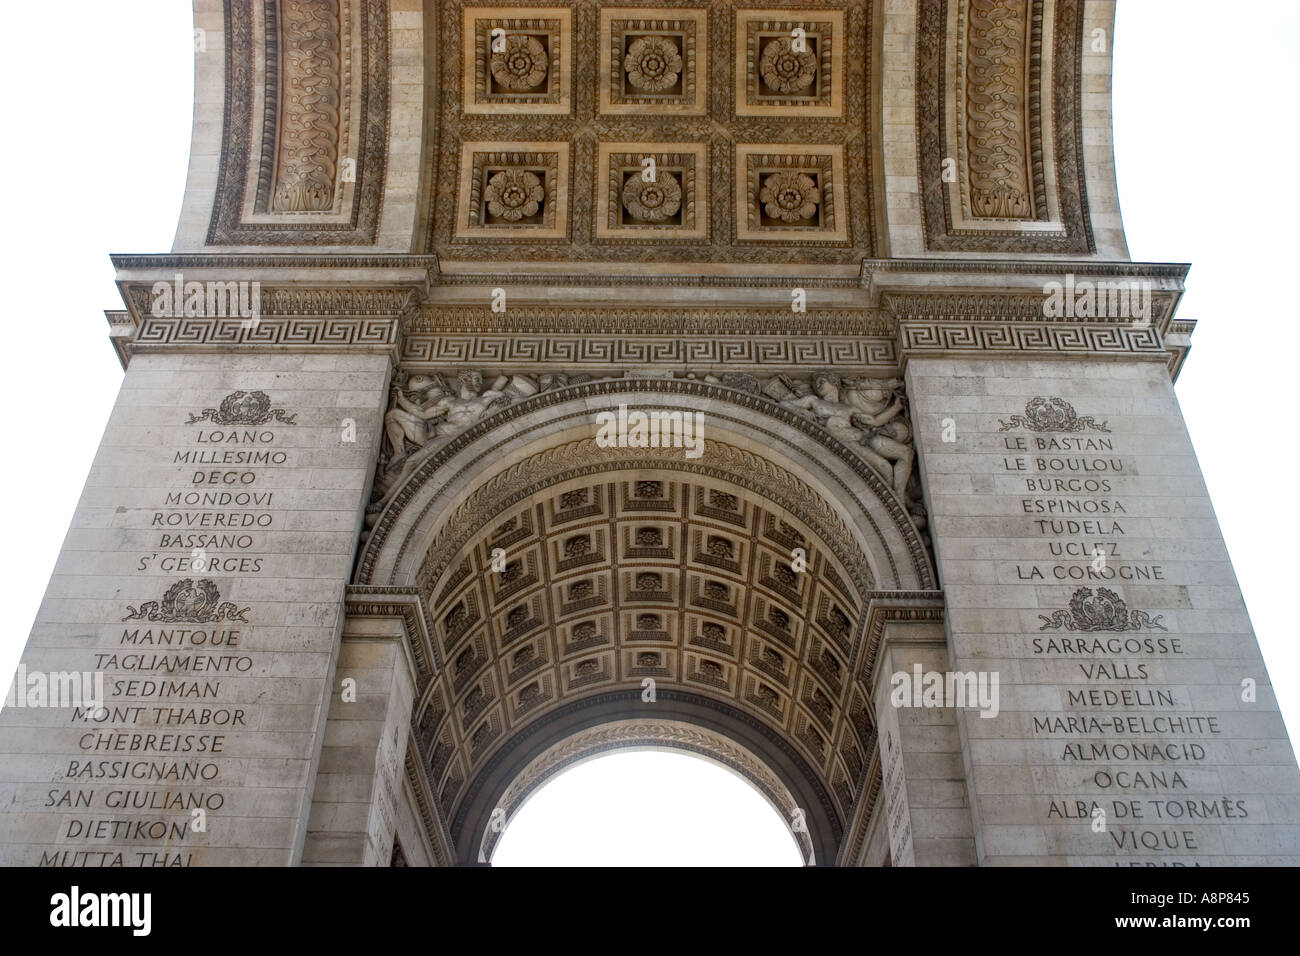 Arch De La Triomphe Arc of Triumph Champs Elysees Paris France sculpture and construction detail Place De Charles De Gaulle Stock Photo